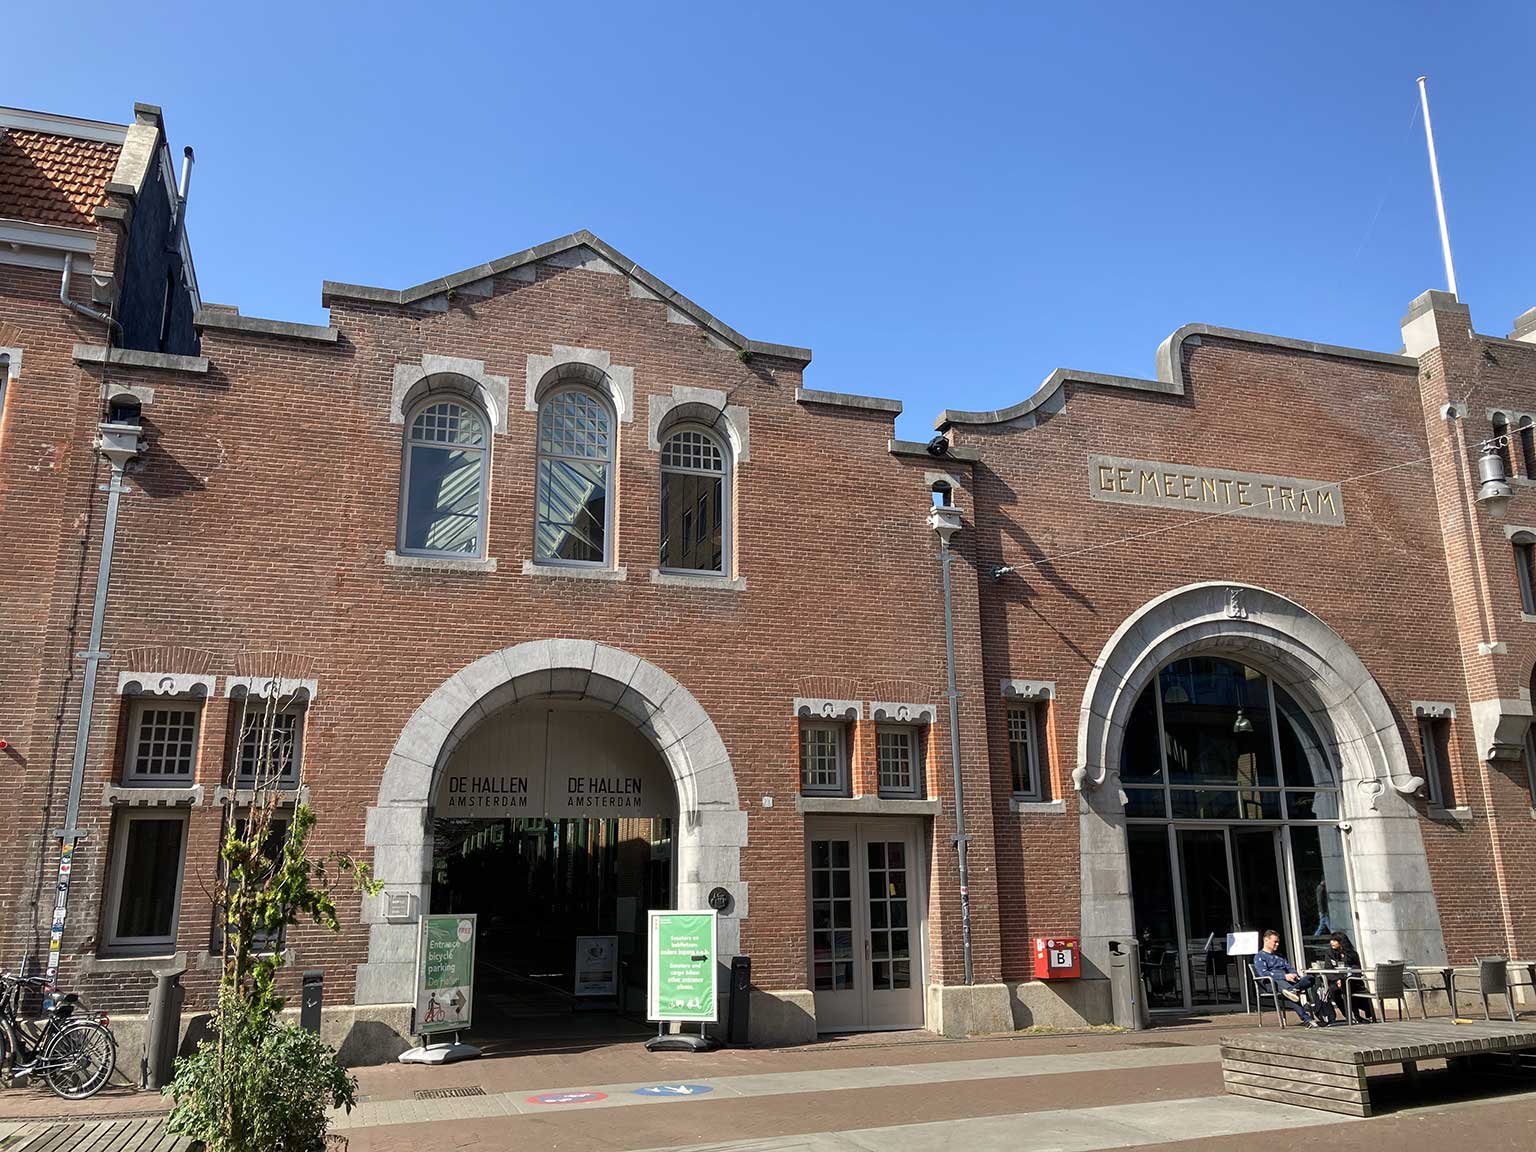 Entrance of De Hallen cultural center on Tollensstraat, Amsterdam